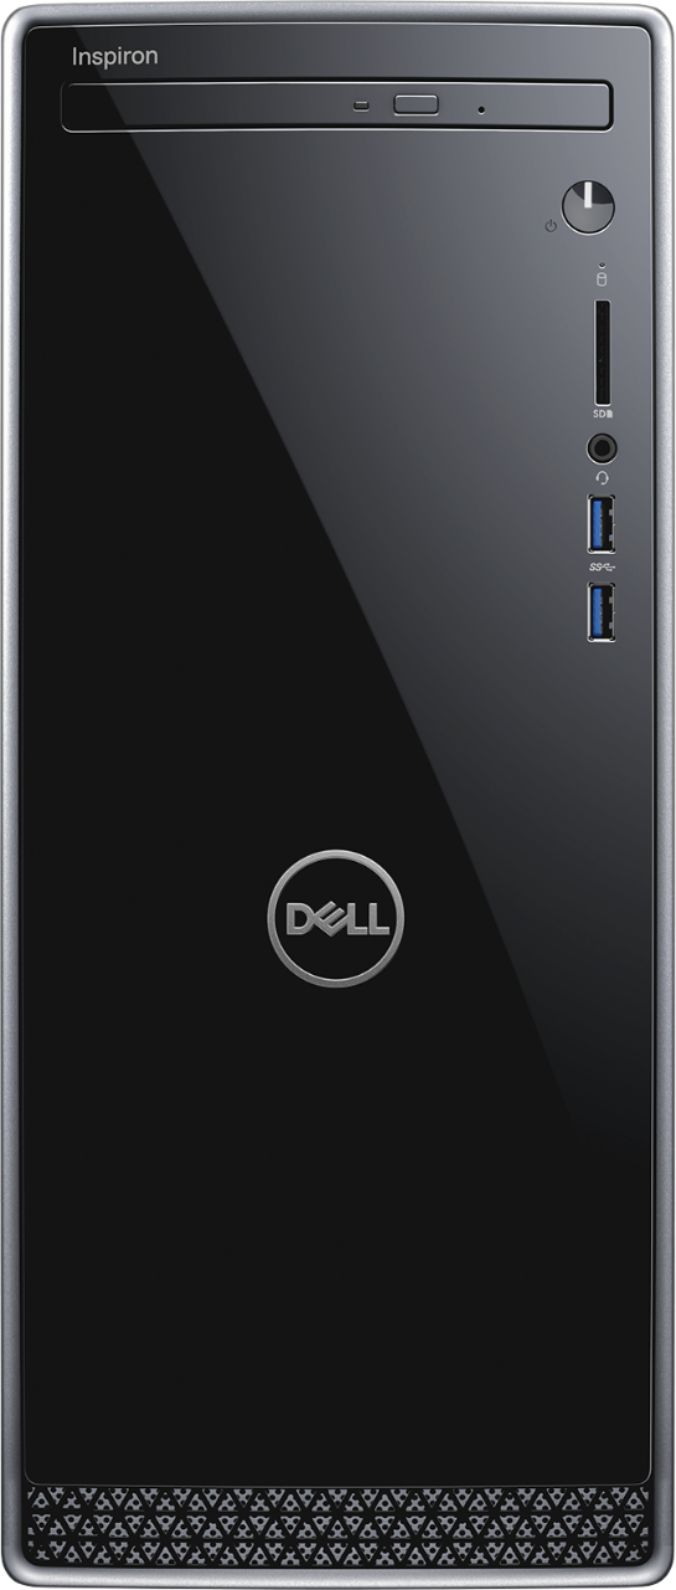 Dell - Inspiron Desktop - Intel Core i5 - 12GB Memory - 1TB Hard Drive - Black With Silver Trim